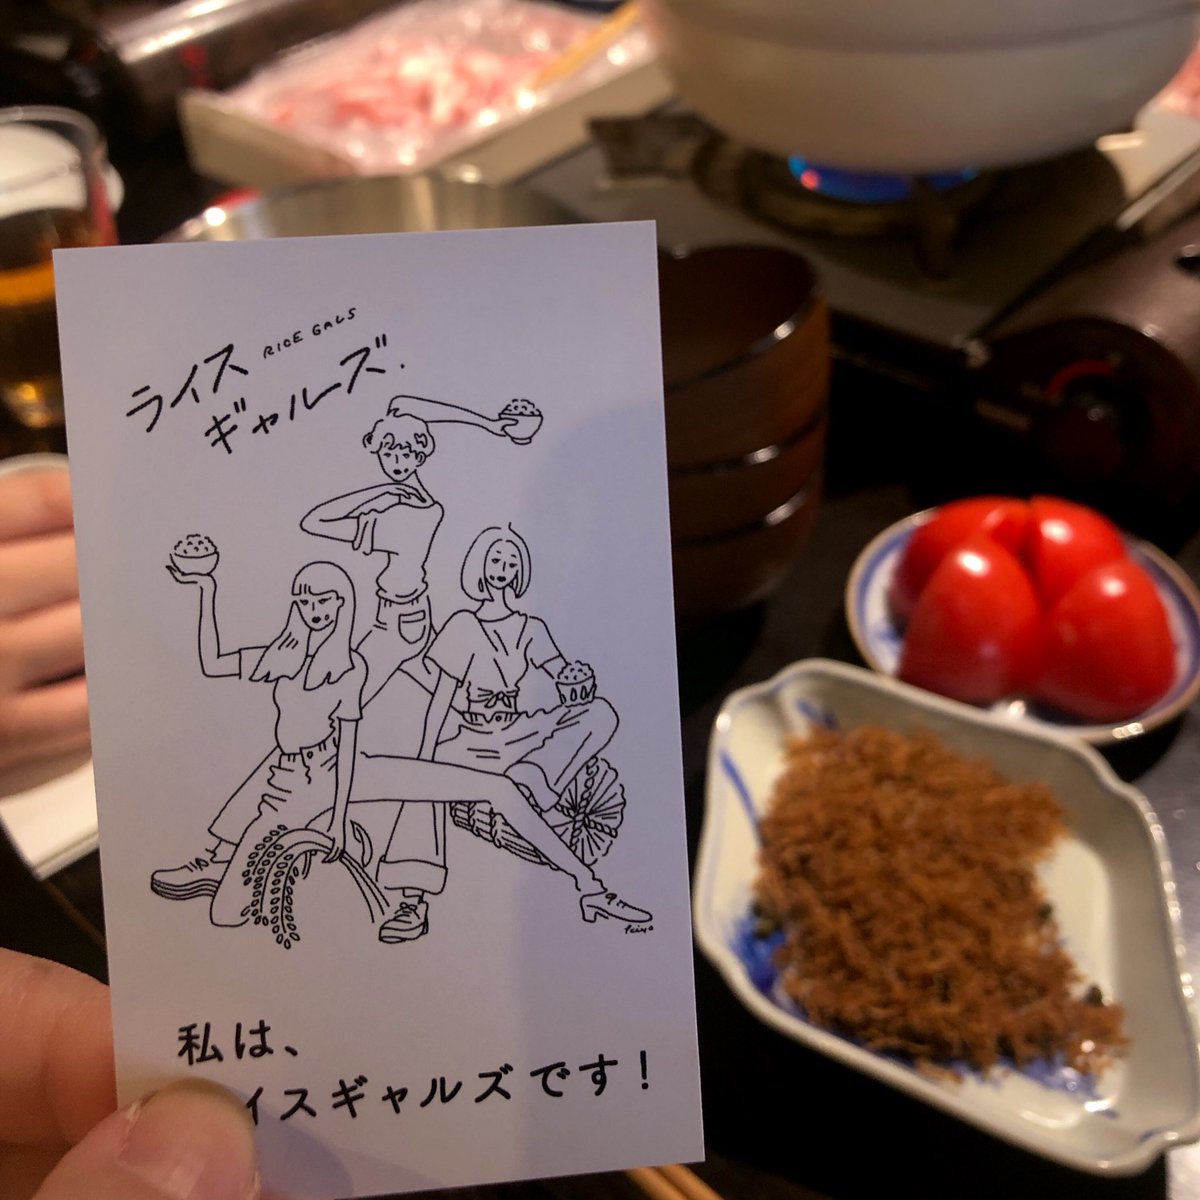 ツツミエリ 昨日は 令和の米騒動 Komesodo Reiwa さん主催の ライスギャルズイベントvol 2に初参加 雑炊のための鍋パーティー 会員証のイラストお洒落かわいいです いい食材のピェンロー鍋で早くも満たされそうになりながら はじめましての方々と談笑